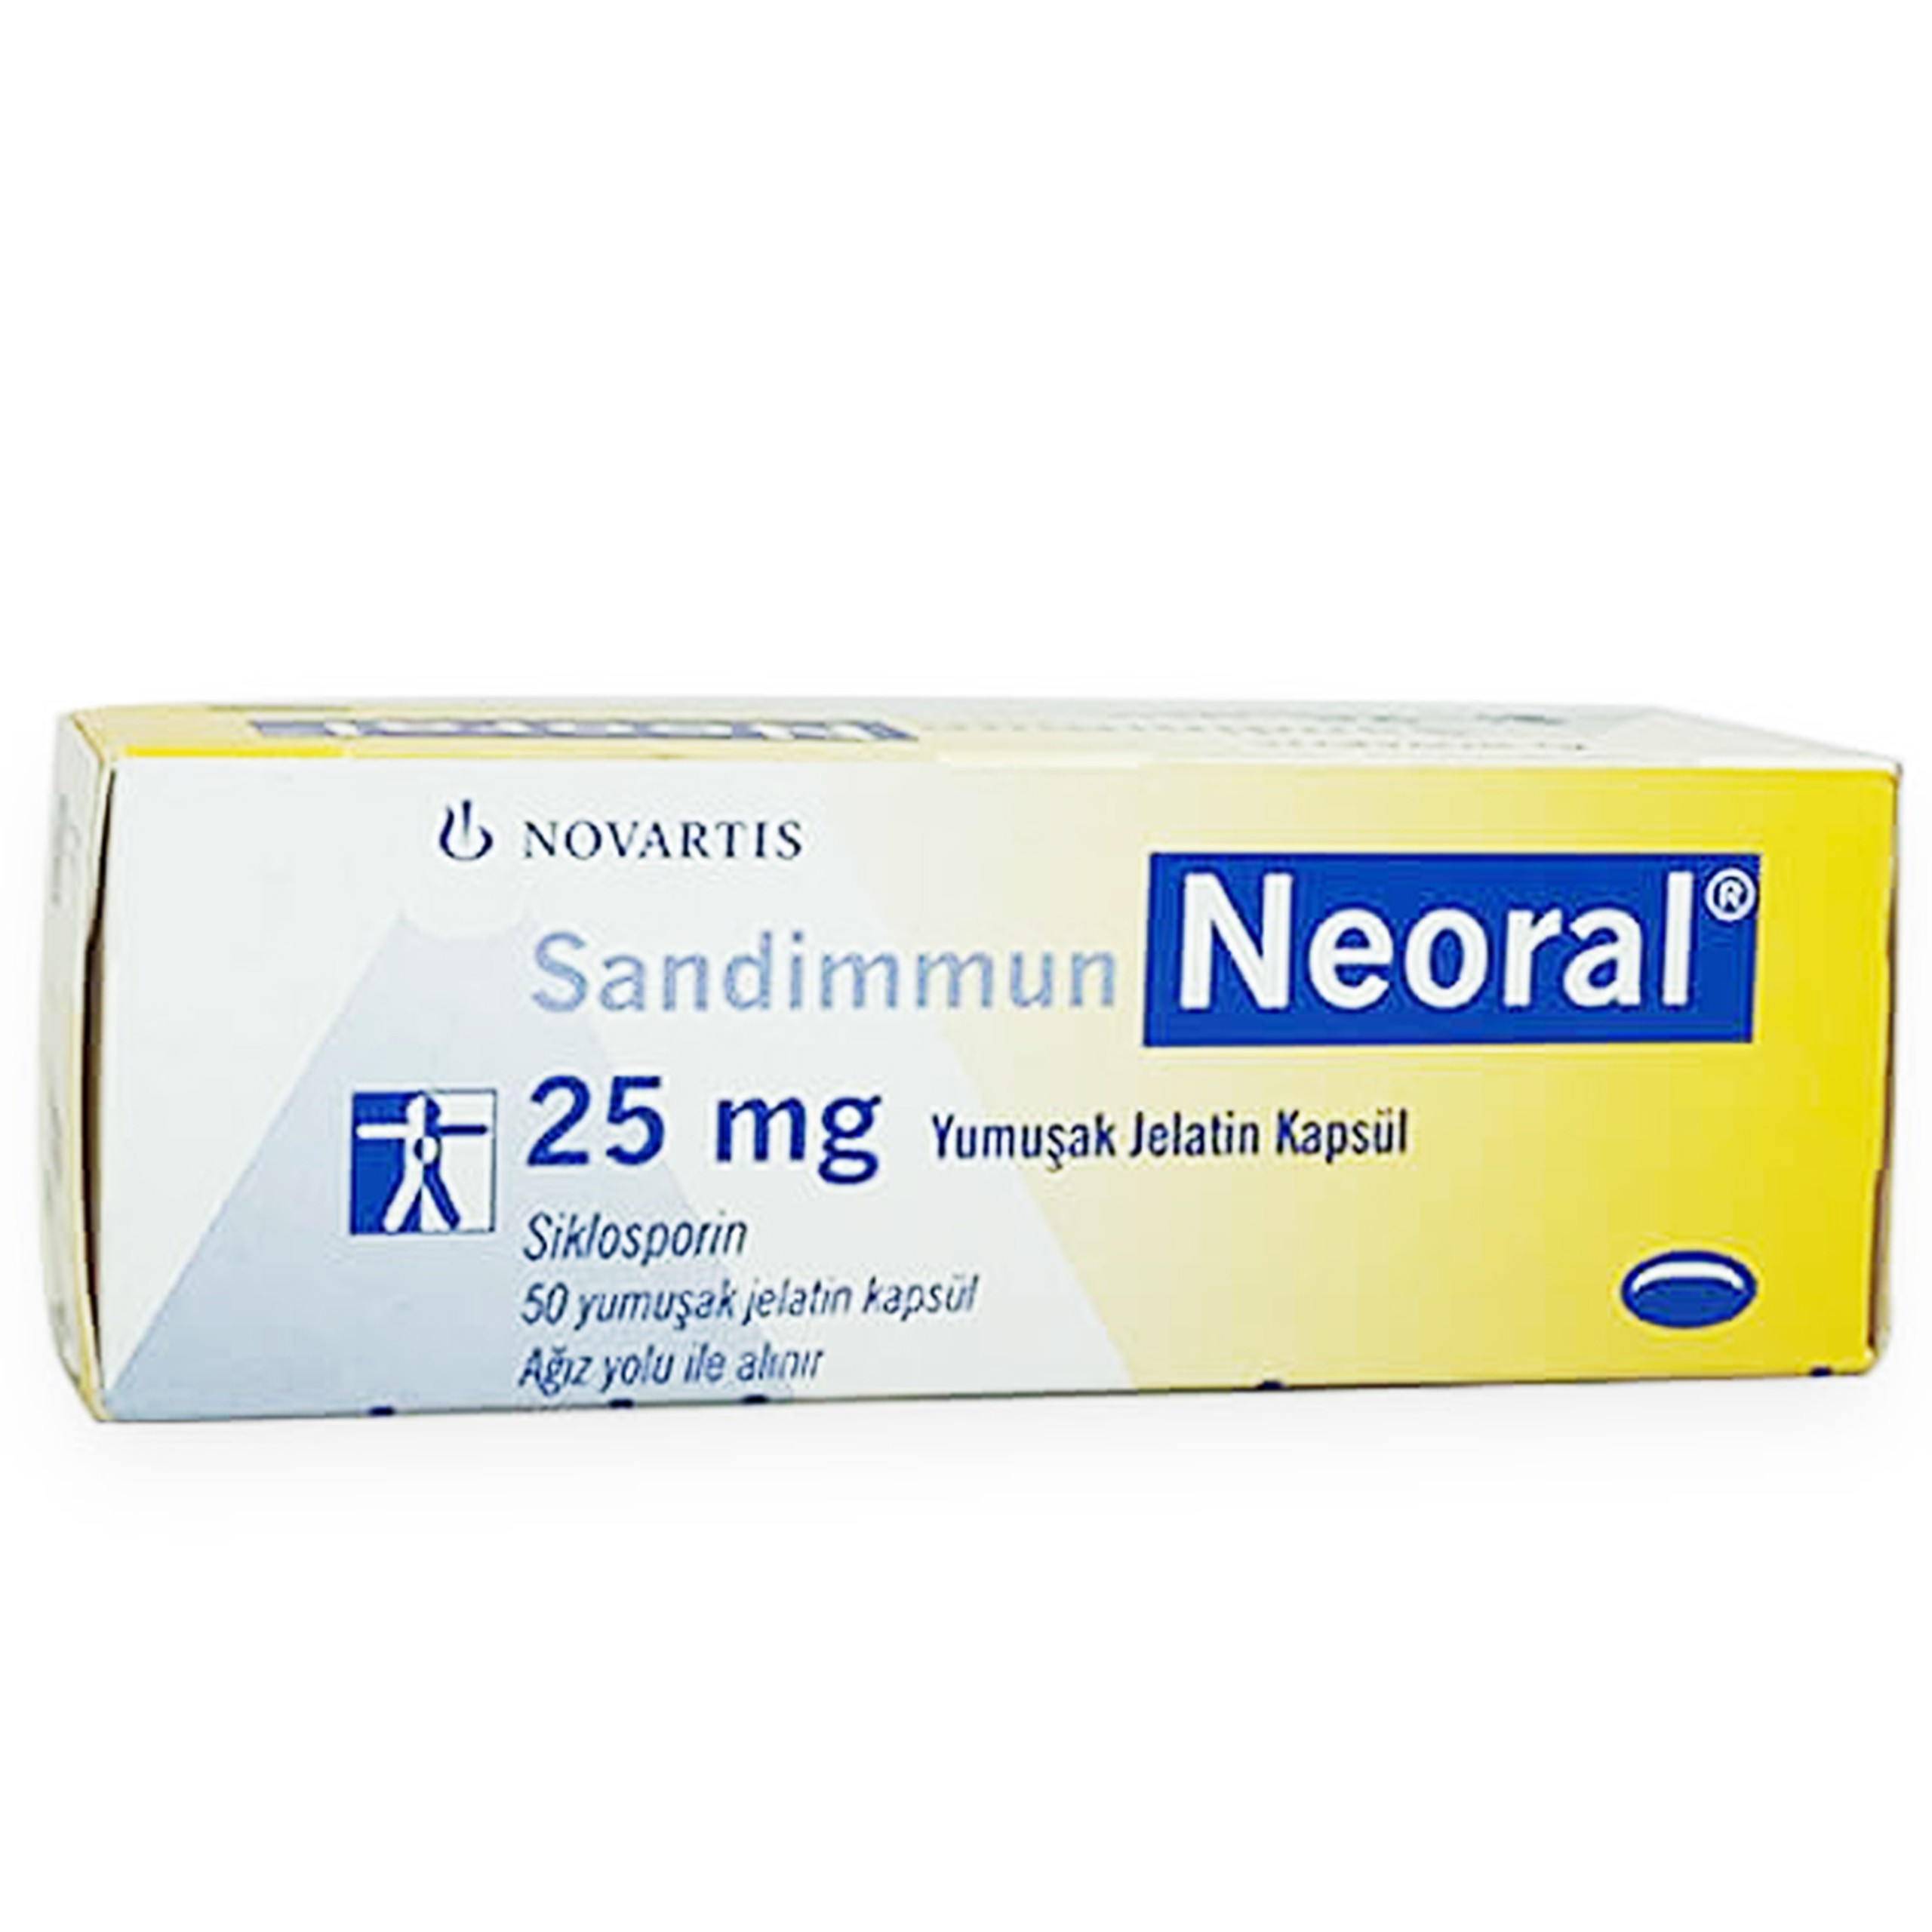 Thuốc Sandimmun Neoral 25mg ức chế miễn dịch, chống đào thải sau ghép tạng (10 vỉ x 5 viên)